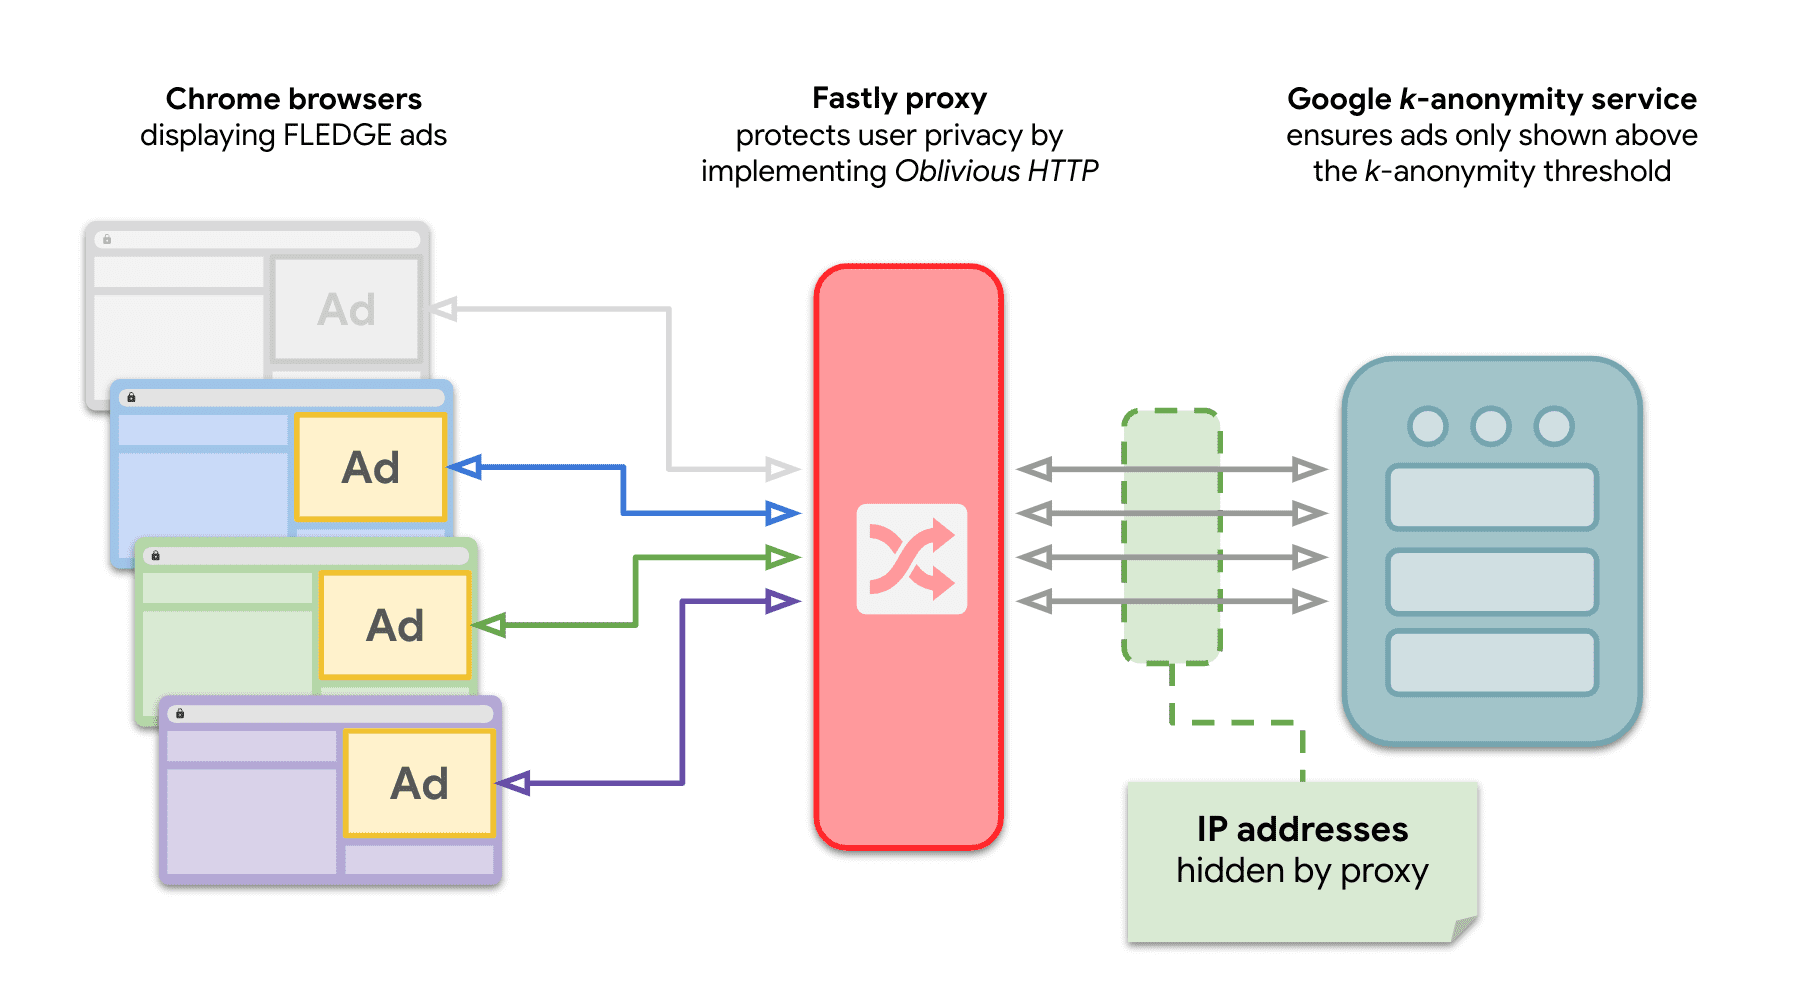 رسم بياني يوضّح أنّ عدة مواقع إلكترونية في Chrome ترسل طلبات إلى خادم إخفاء الهوية k لعرض إعلانات FLEDGE مع ترحيل OHTTP بينهما.